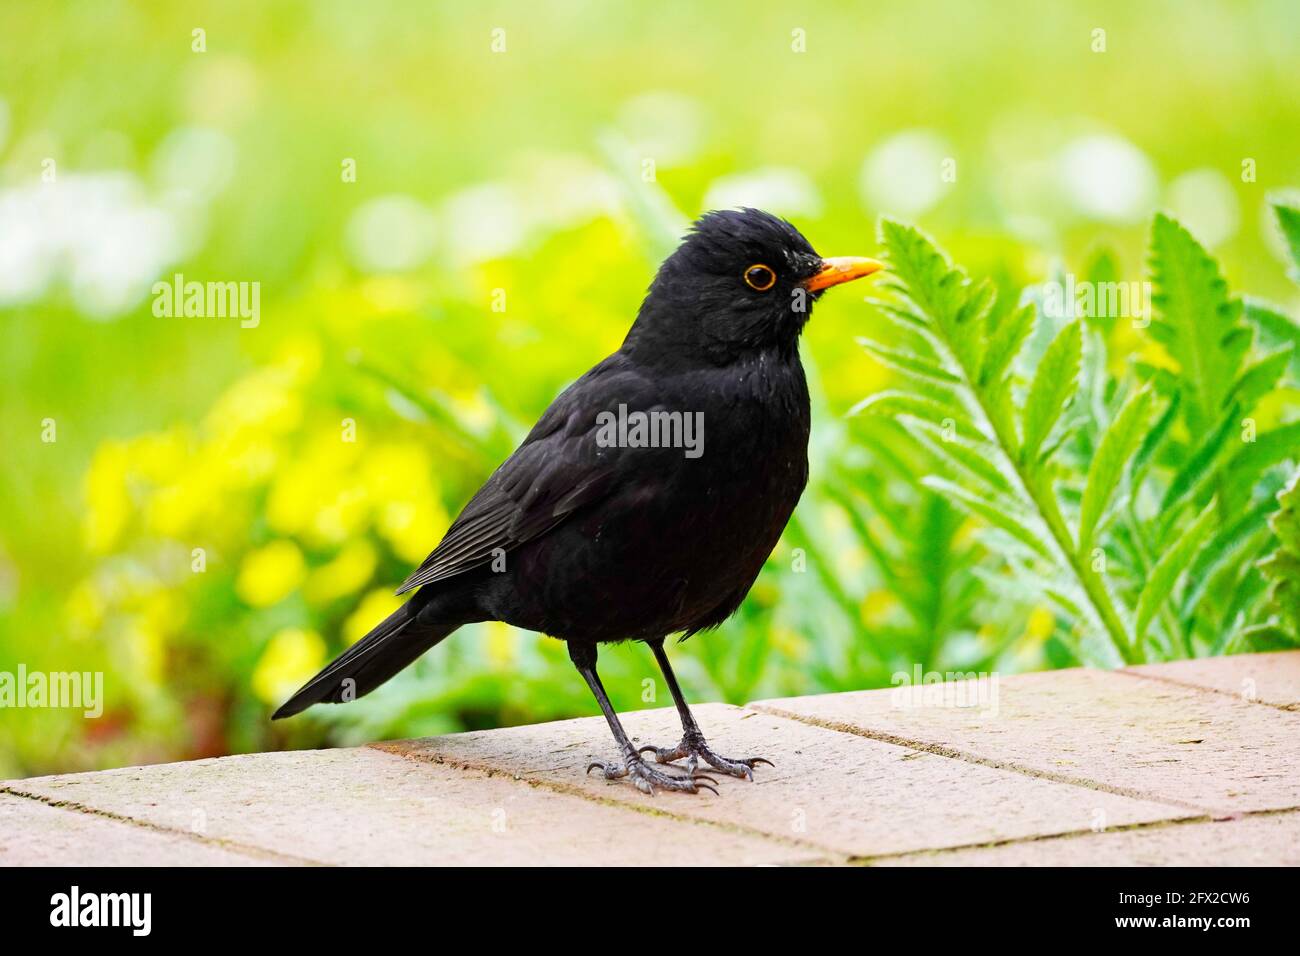 Blackbird auf der Terrasse im Garten in Nahaufnahme. Vogel mit schwarzem Gefieder und orangefarbenem Schnabel. Turdus merula. Stockfoto